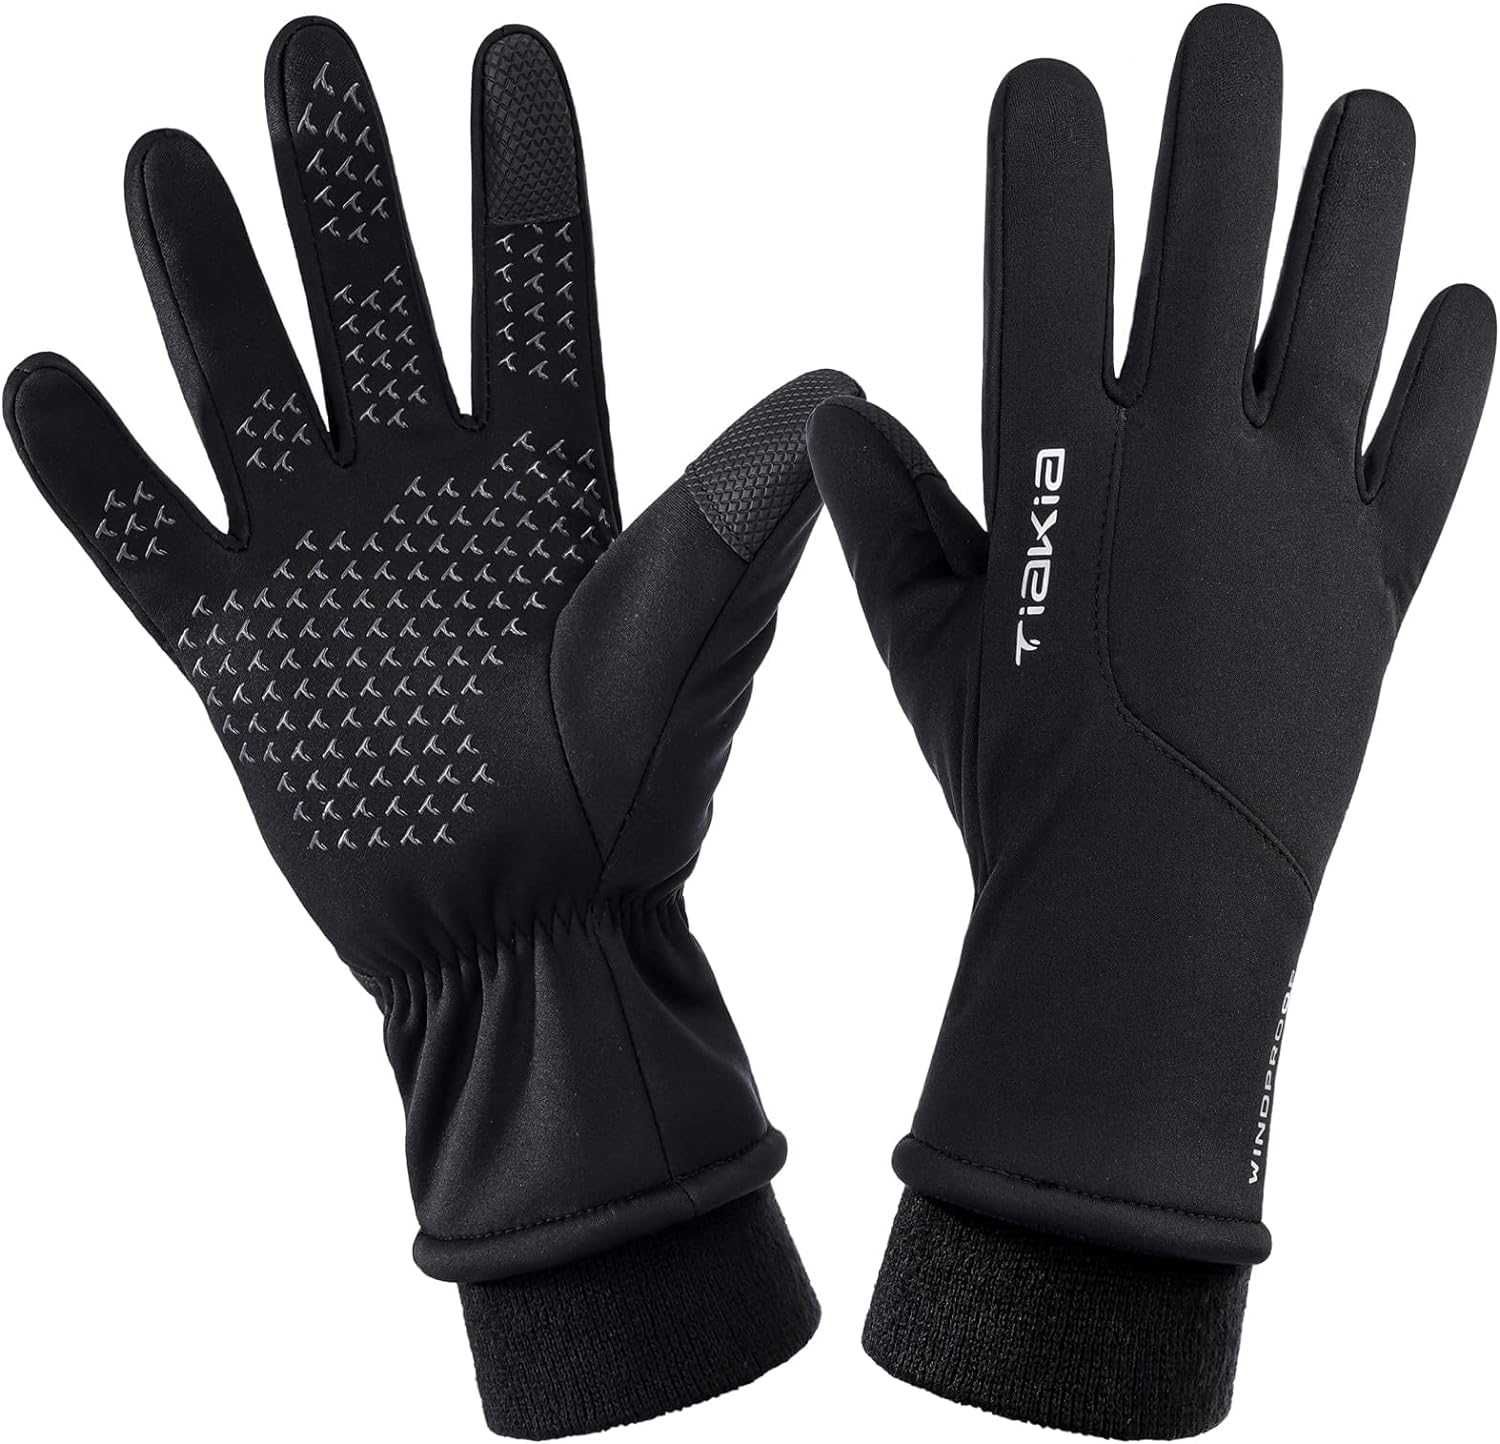 Nowe męskie zimowe rękawiczki / ocieplane / wodoodporne Tiakia !L/XL!